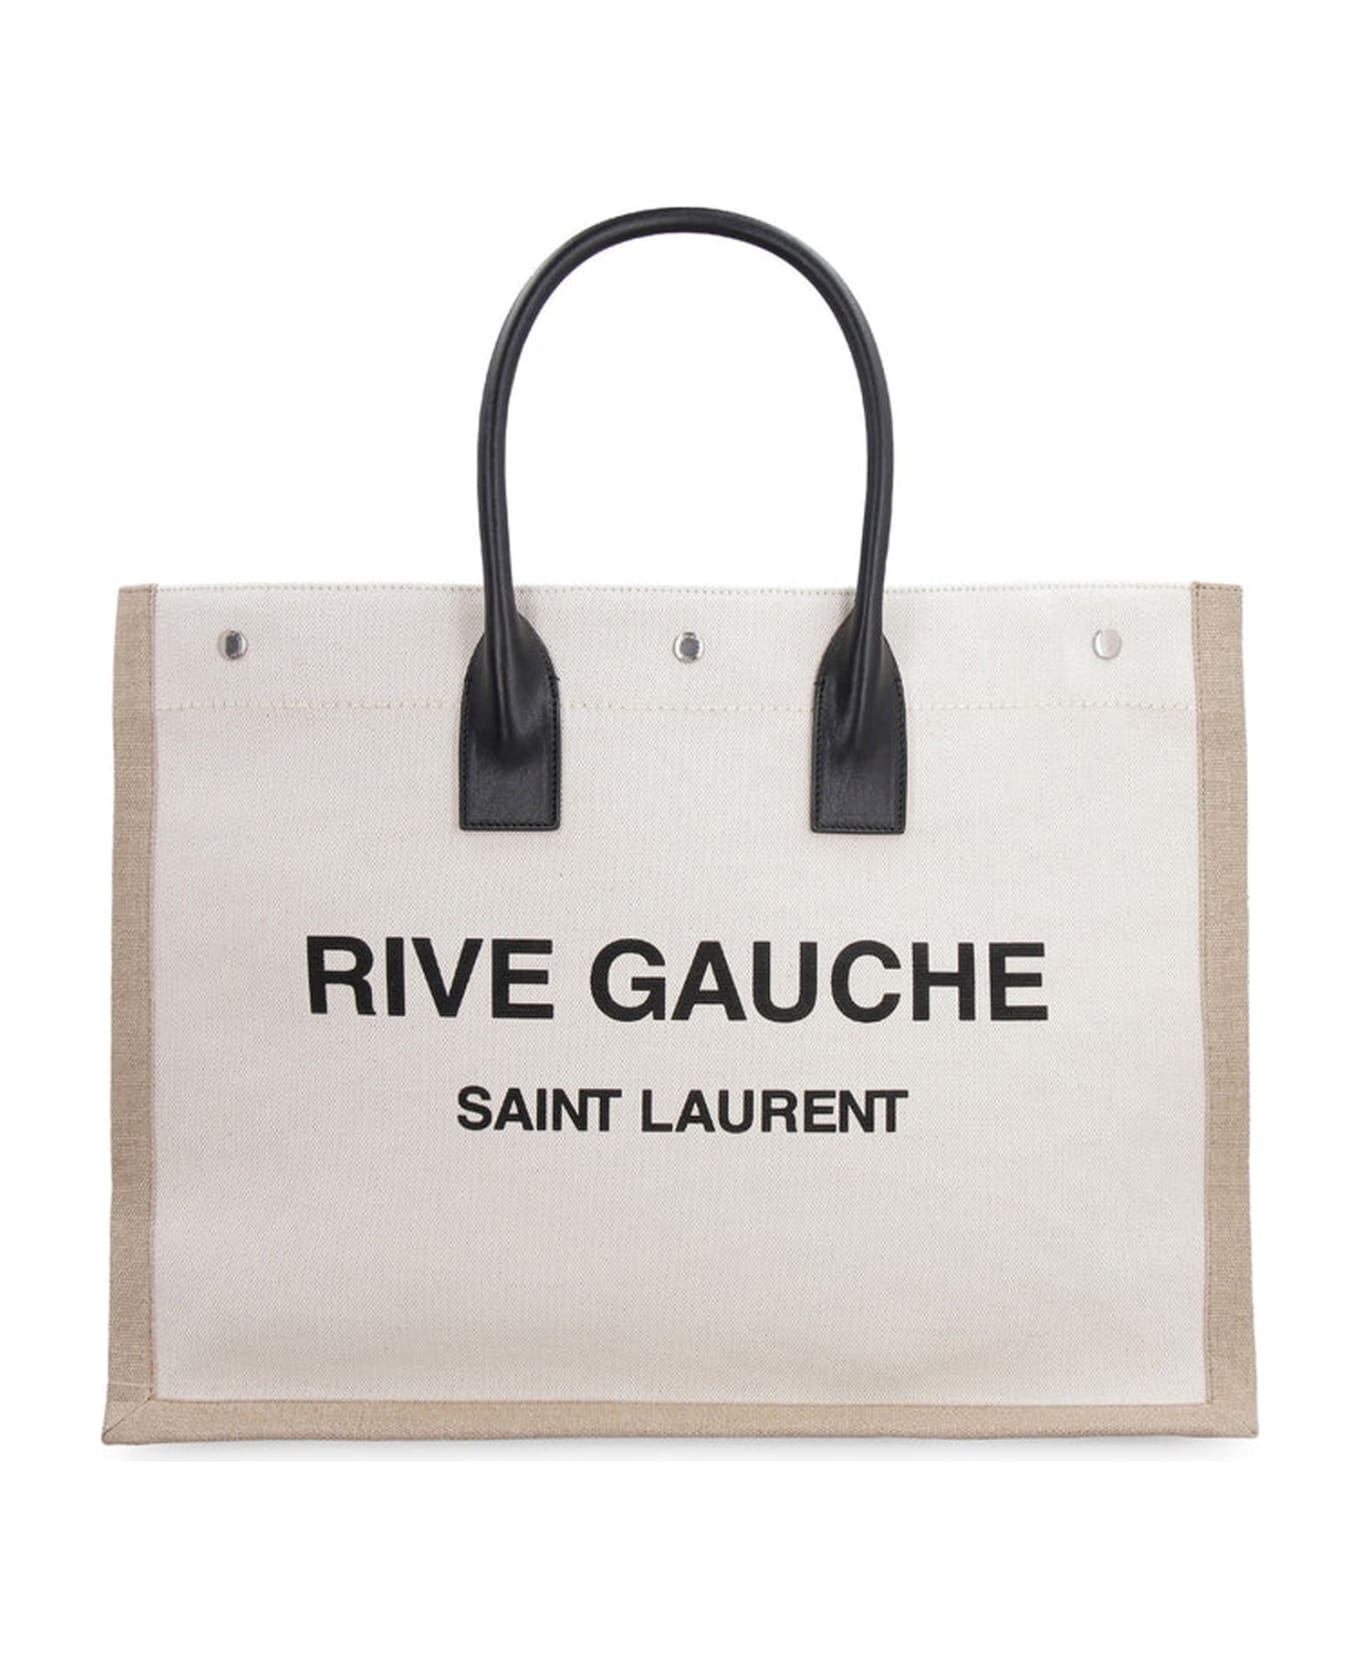 Rive Gauche Tote Bag | Italist.com US